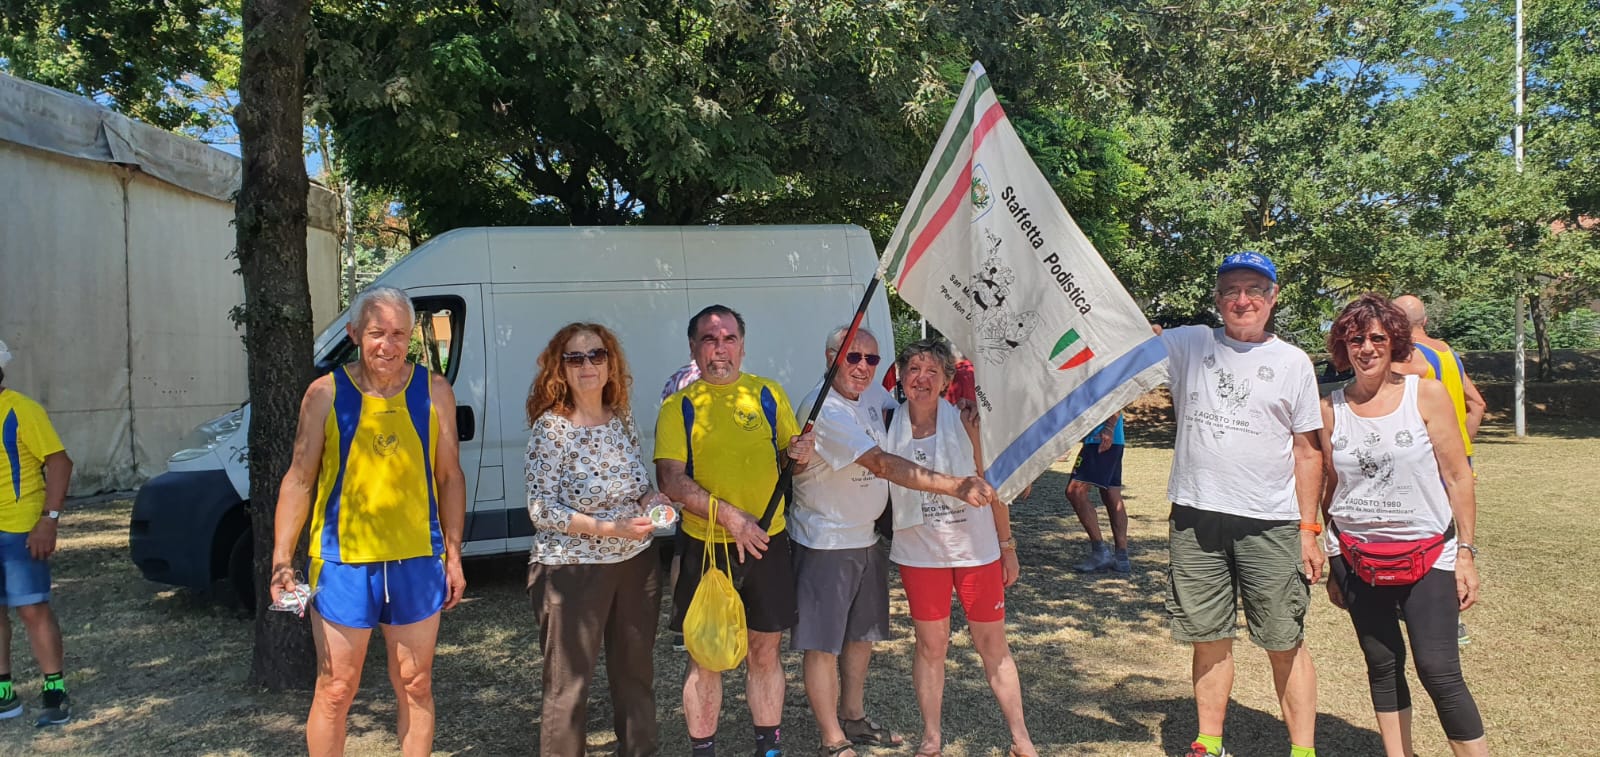 Massa - San Patrizio: Sulle orme della staffetta del 2 agosto - 31 luglio 2022